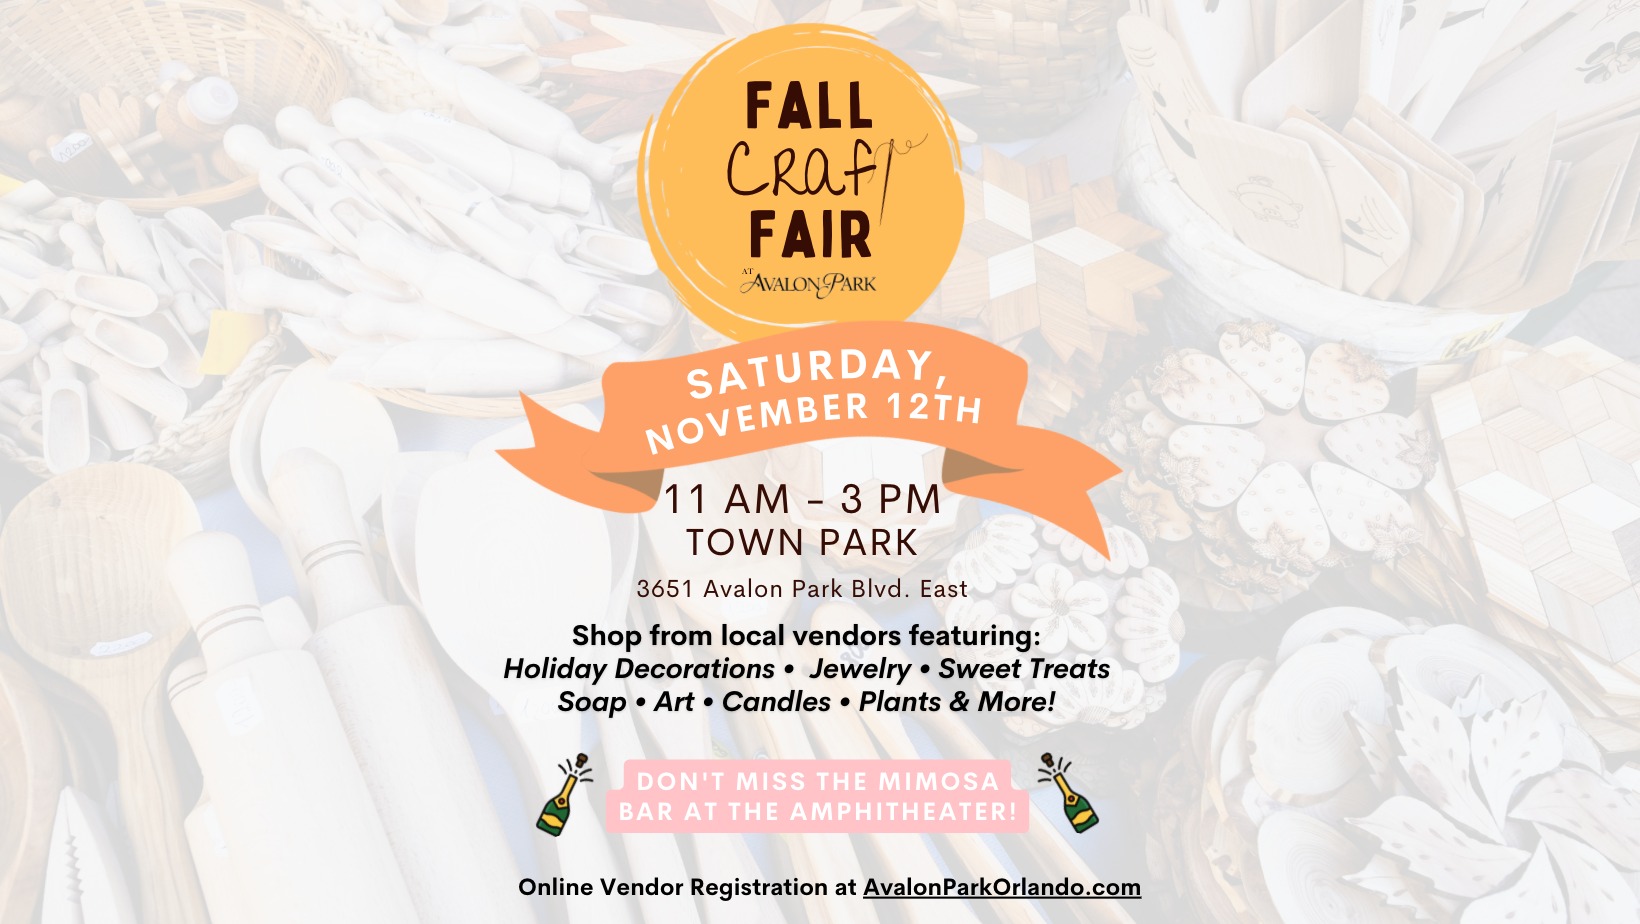 Fall Craft Fair at Avalon Park